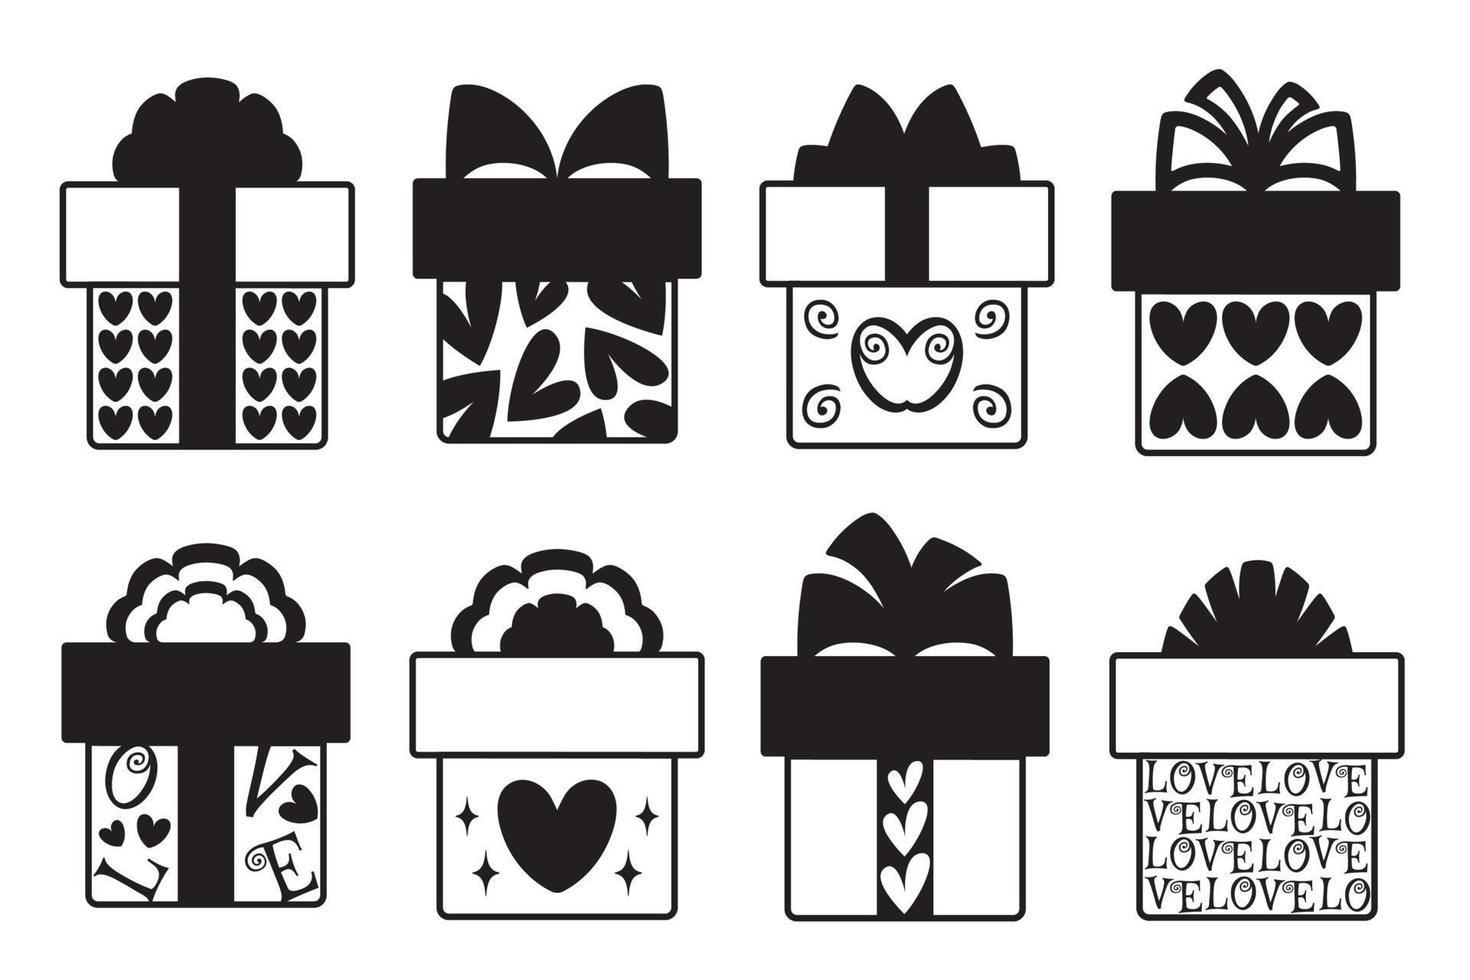 ensemble de cadeaux de saint valentin avec des coeurs. icônes de boîte-cadeau. illustration vectorielle de style noir et blanc. vecteur